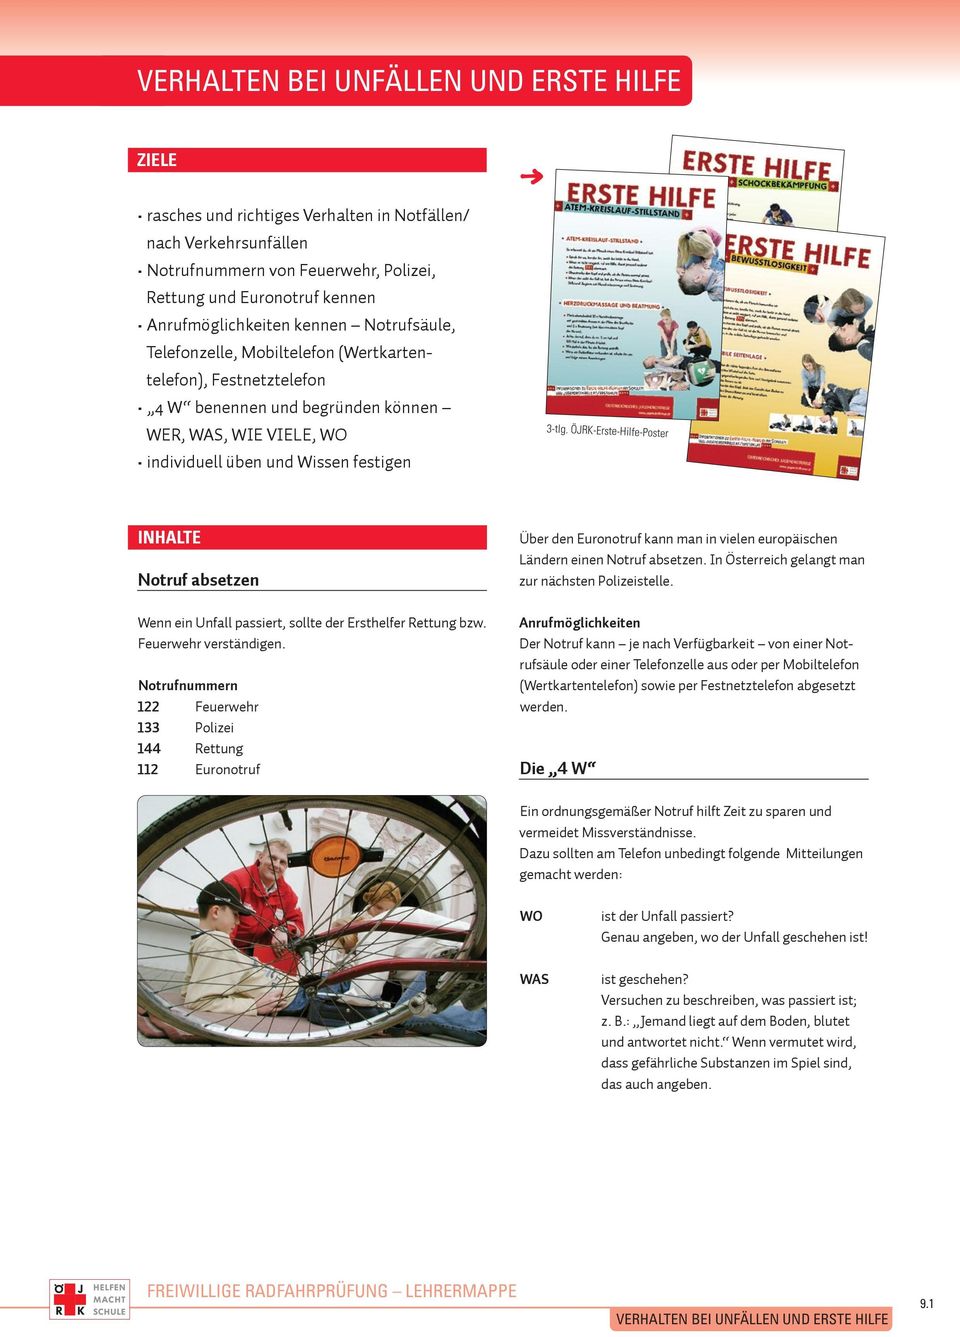 ÖJRK-Erste-Hilfe-Poster INHALTE Notruf absetzen Wenn ein Unfall passiert, sollte der Ersthelfer Rettung bzw. Feuerwehr verständigen.